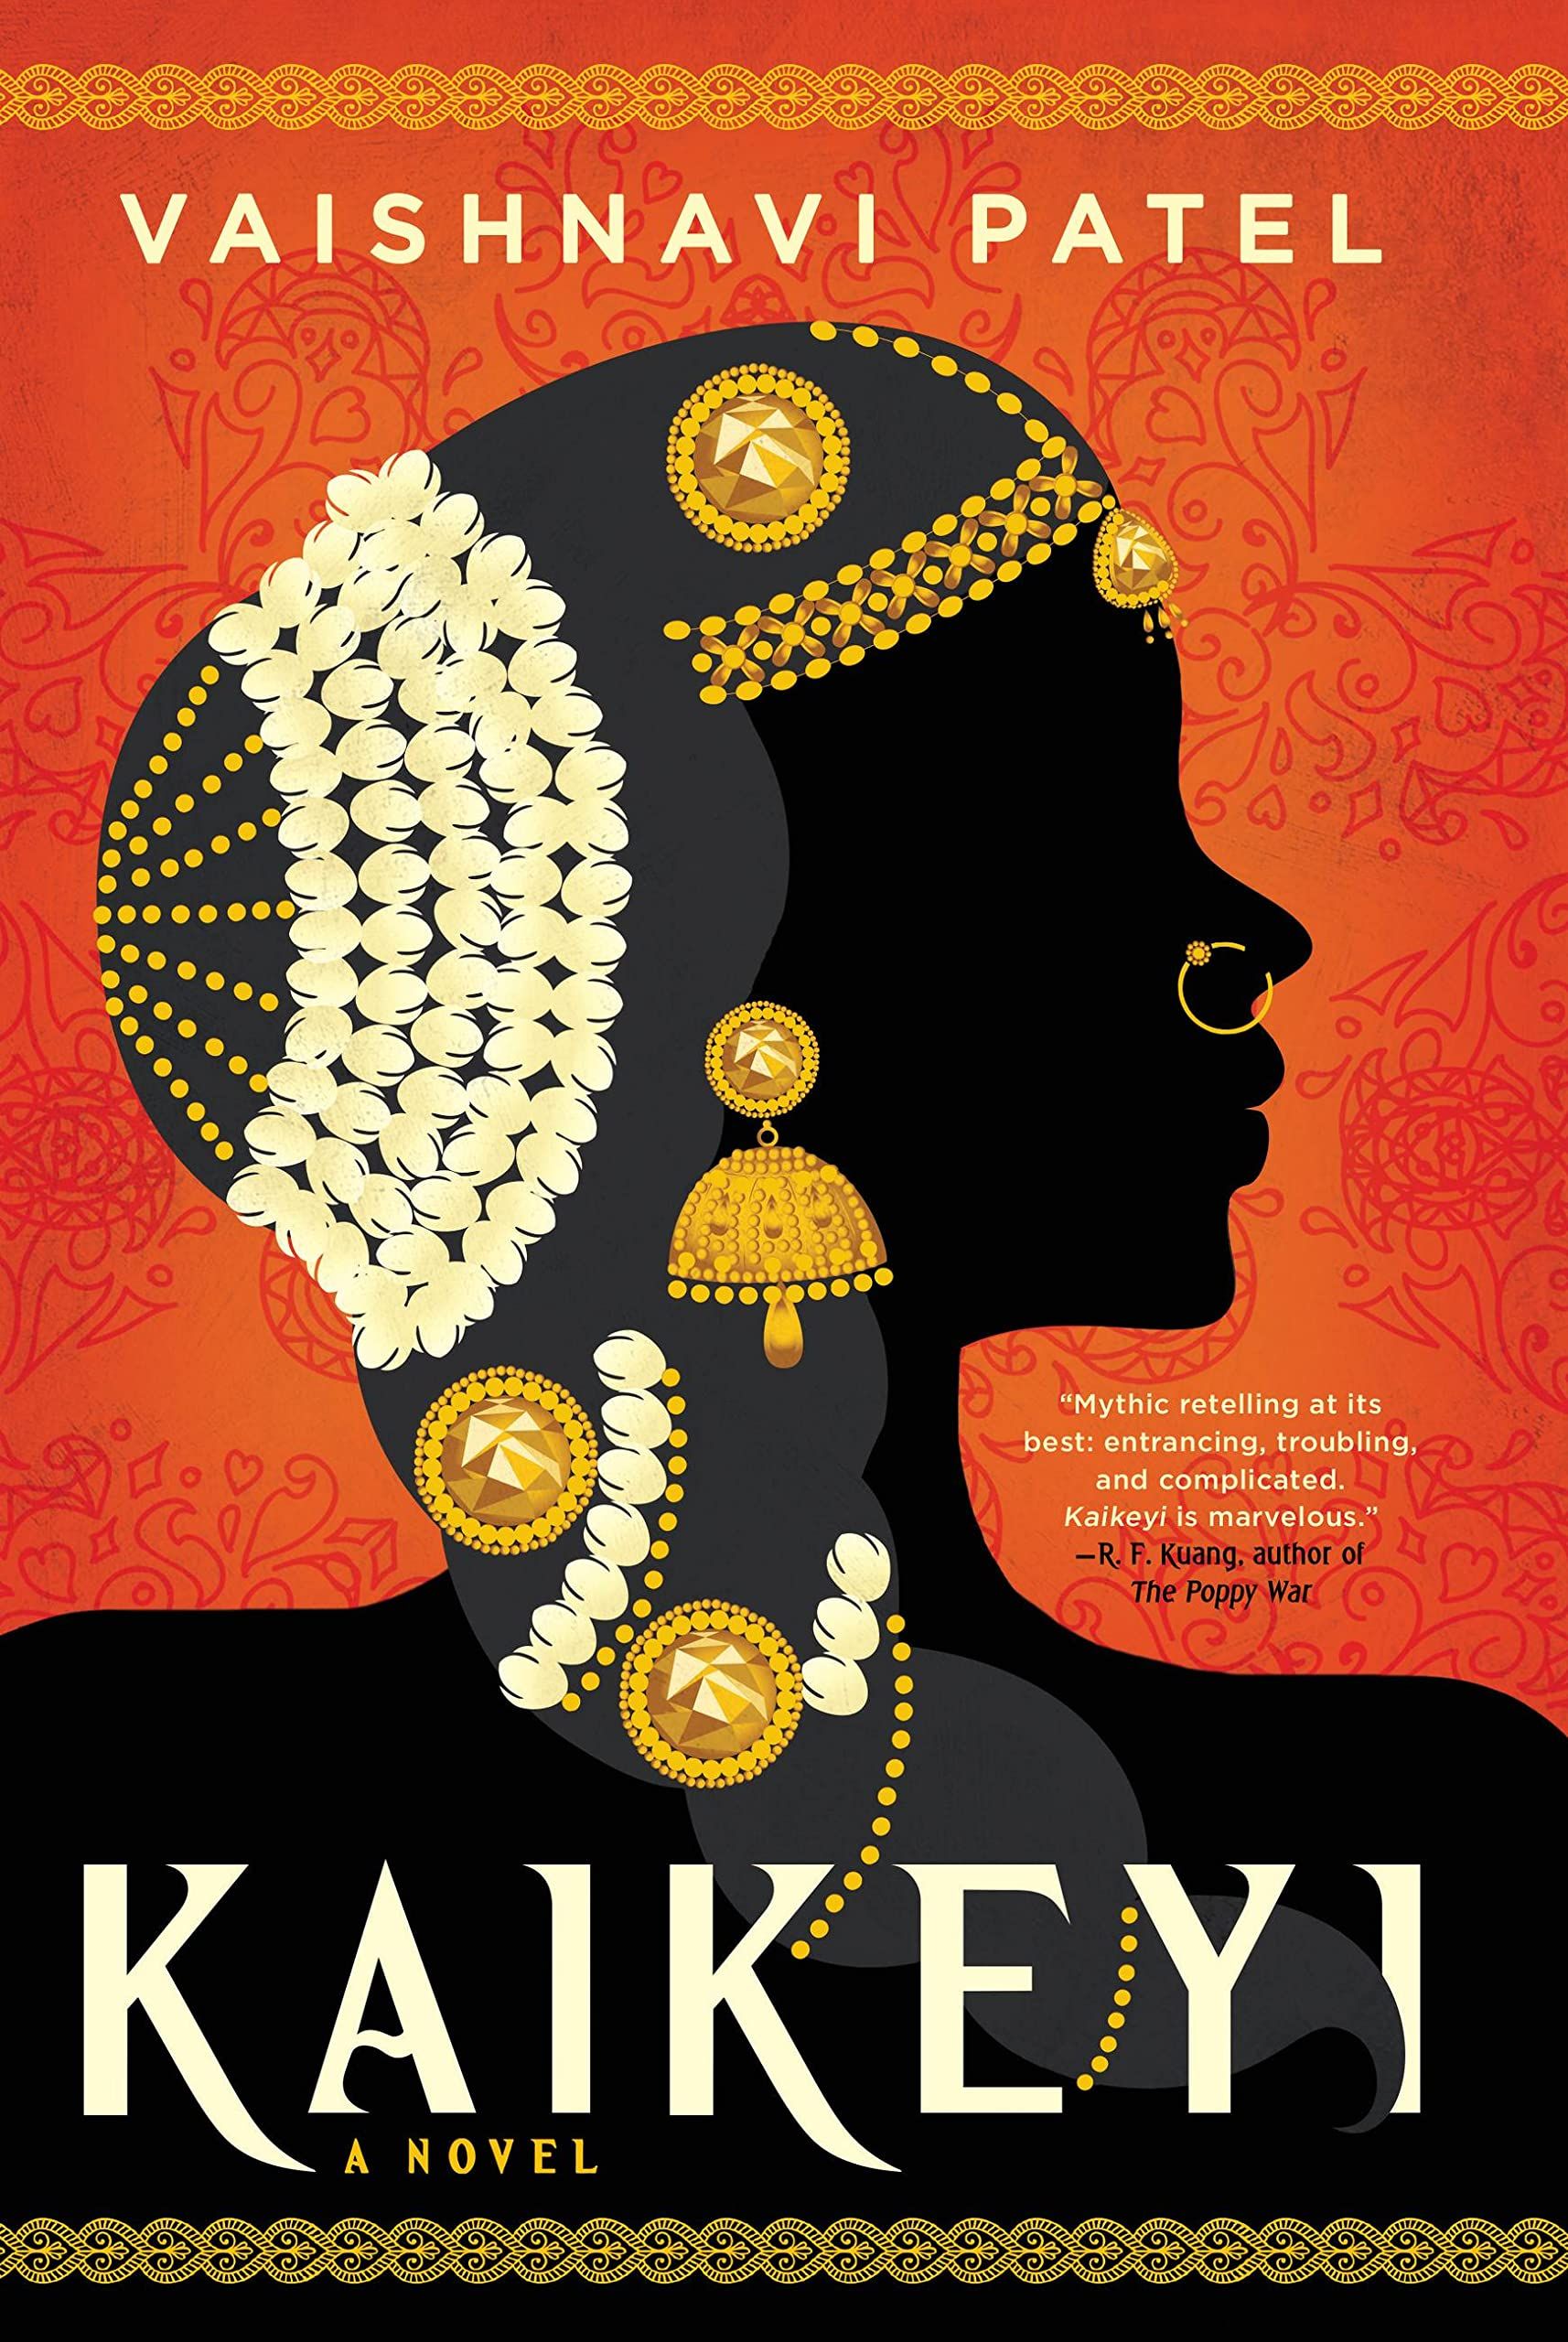 Kaikeyi by Vaishnavi Patel cover